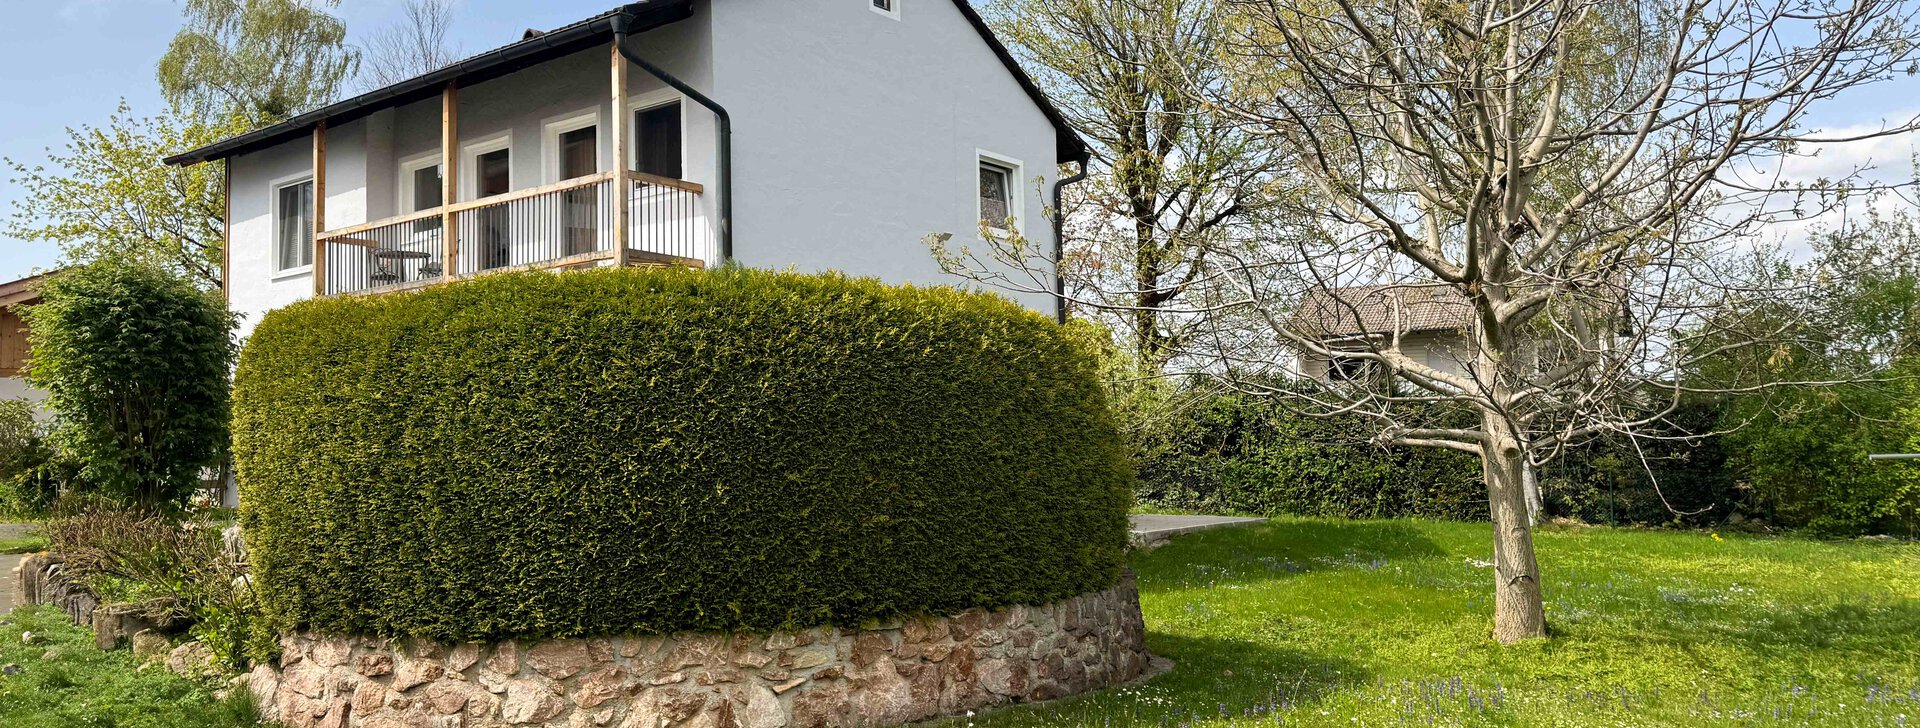 Außenansicht mit Garten, Einfamilienhaus, Immobilie kaufen, Wolkersdorf-Traunstein | © HausBauHaus GmbH